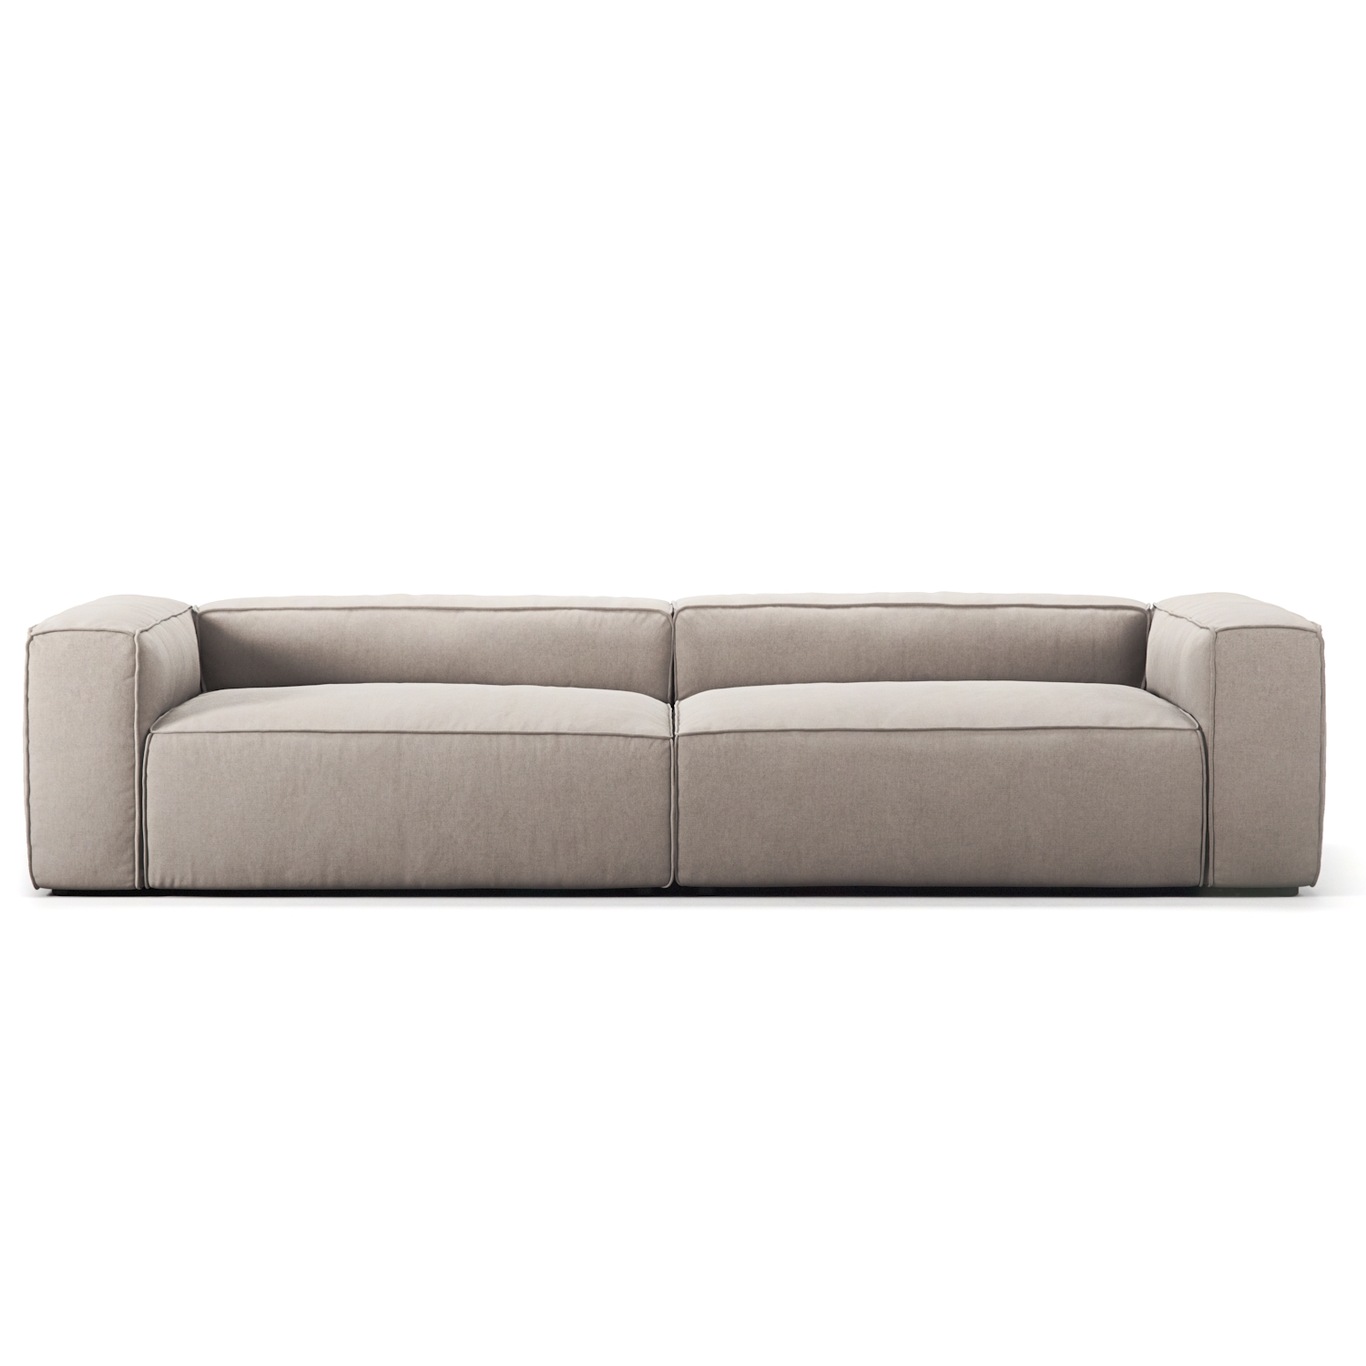 Grand 4-Seter Sofa, Sandshell Beige